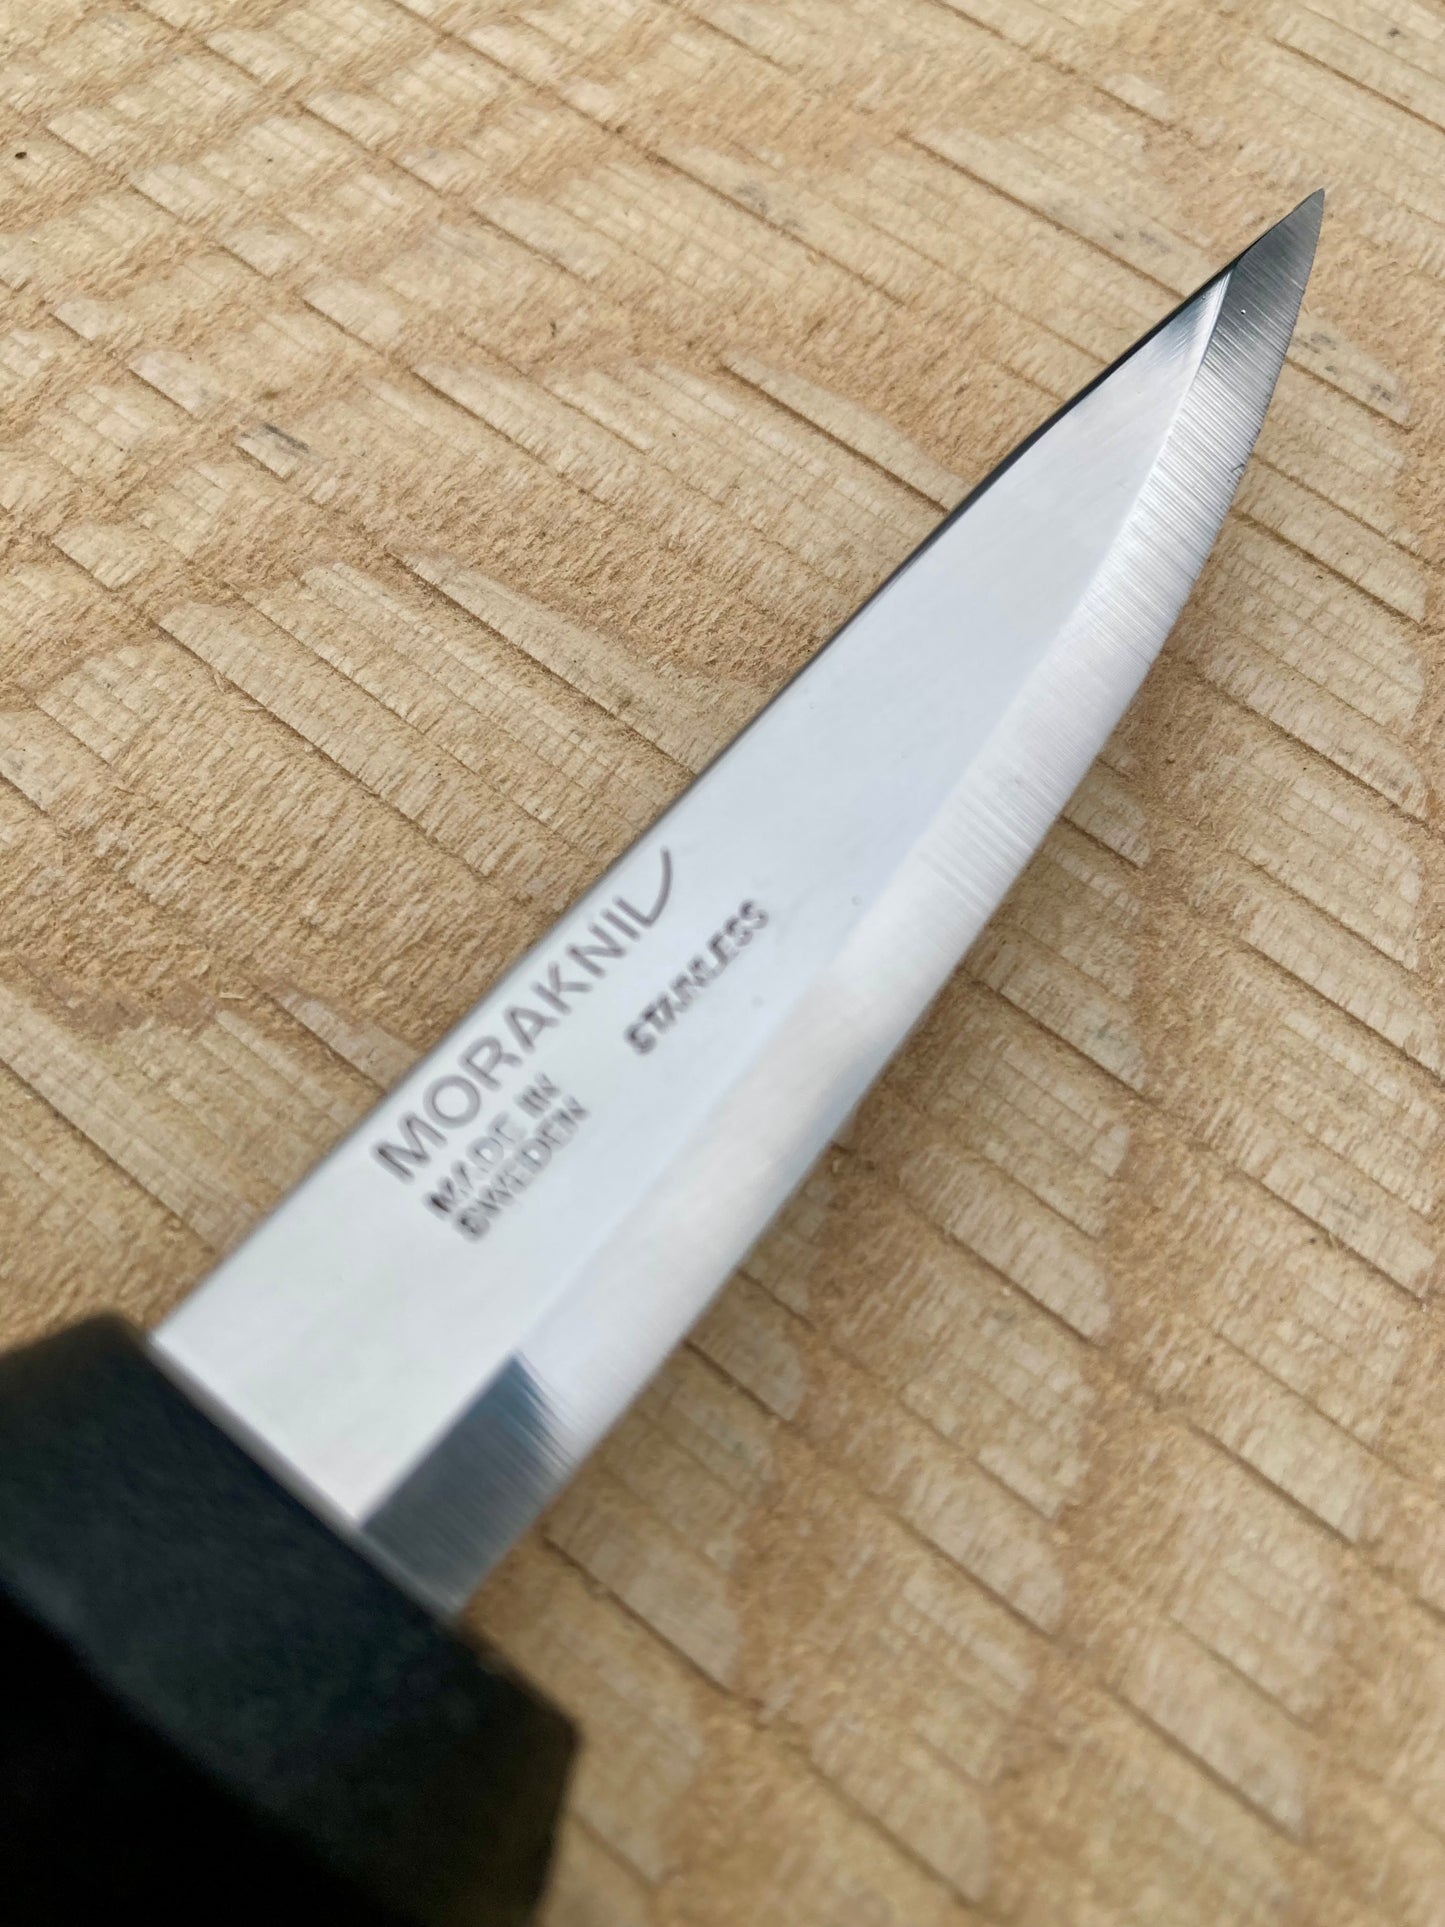 Mora - Basic Knife